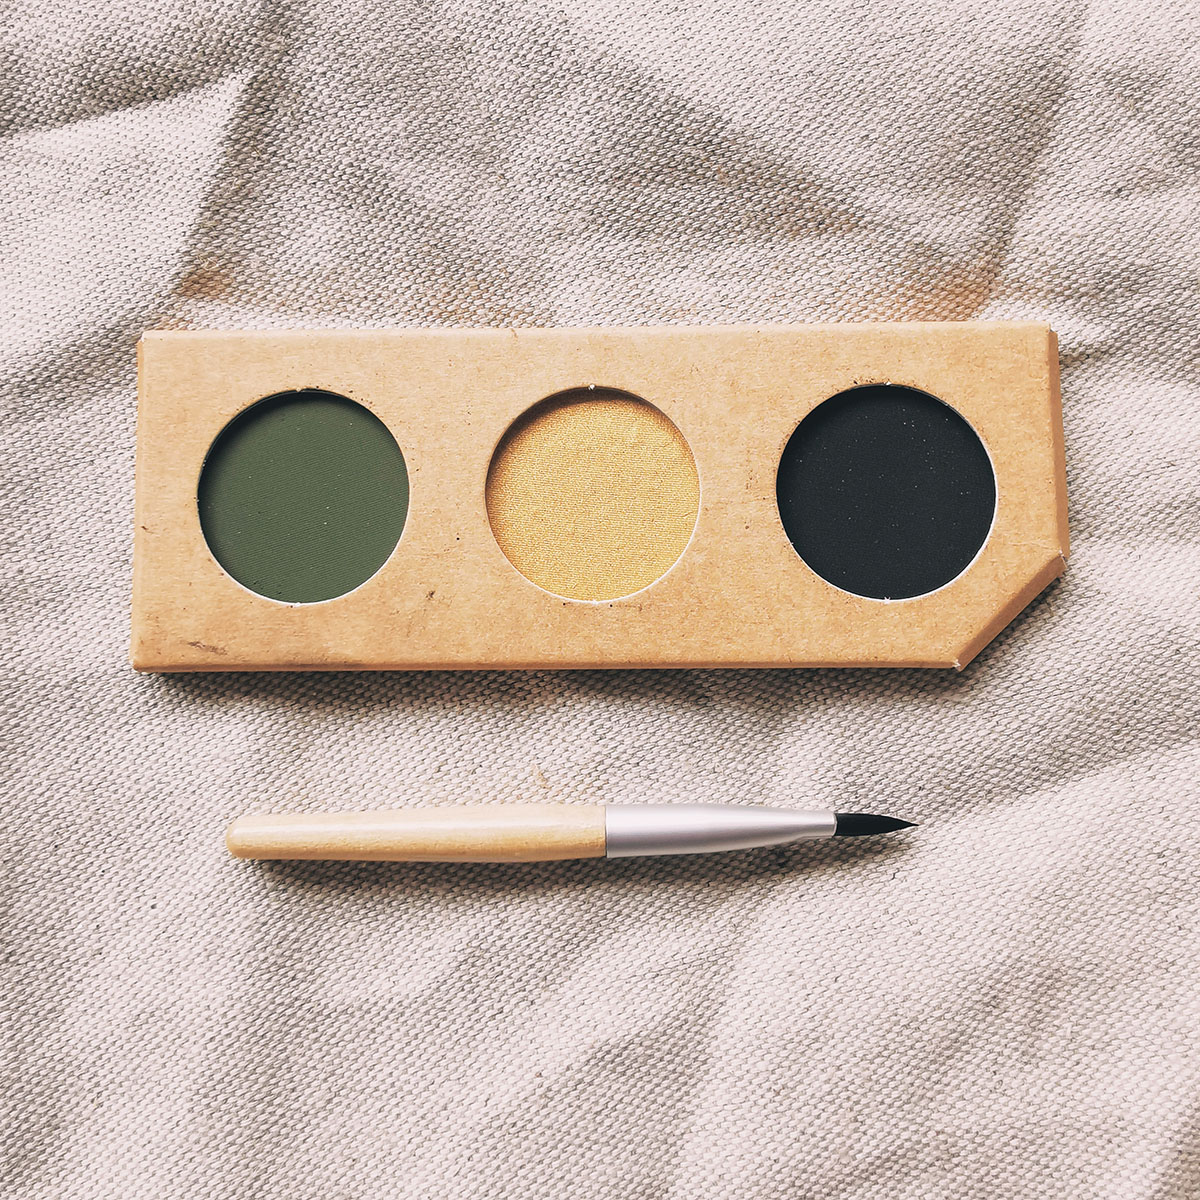 Kit de maquillage naturel 3 couleurs - Vert, or et noir